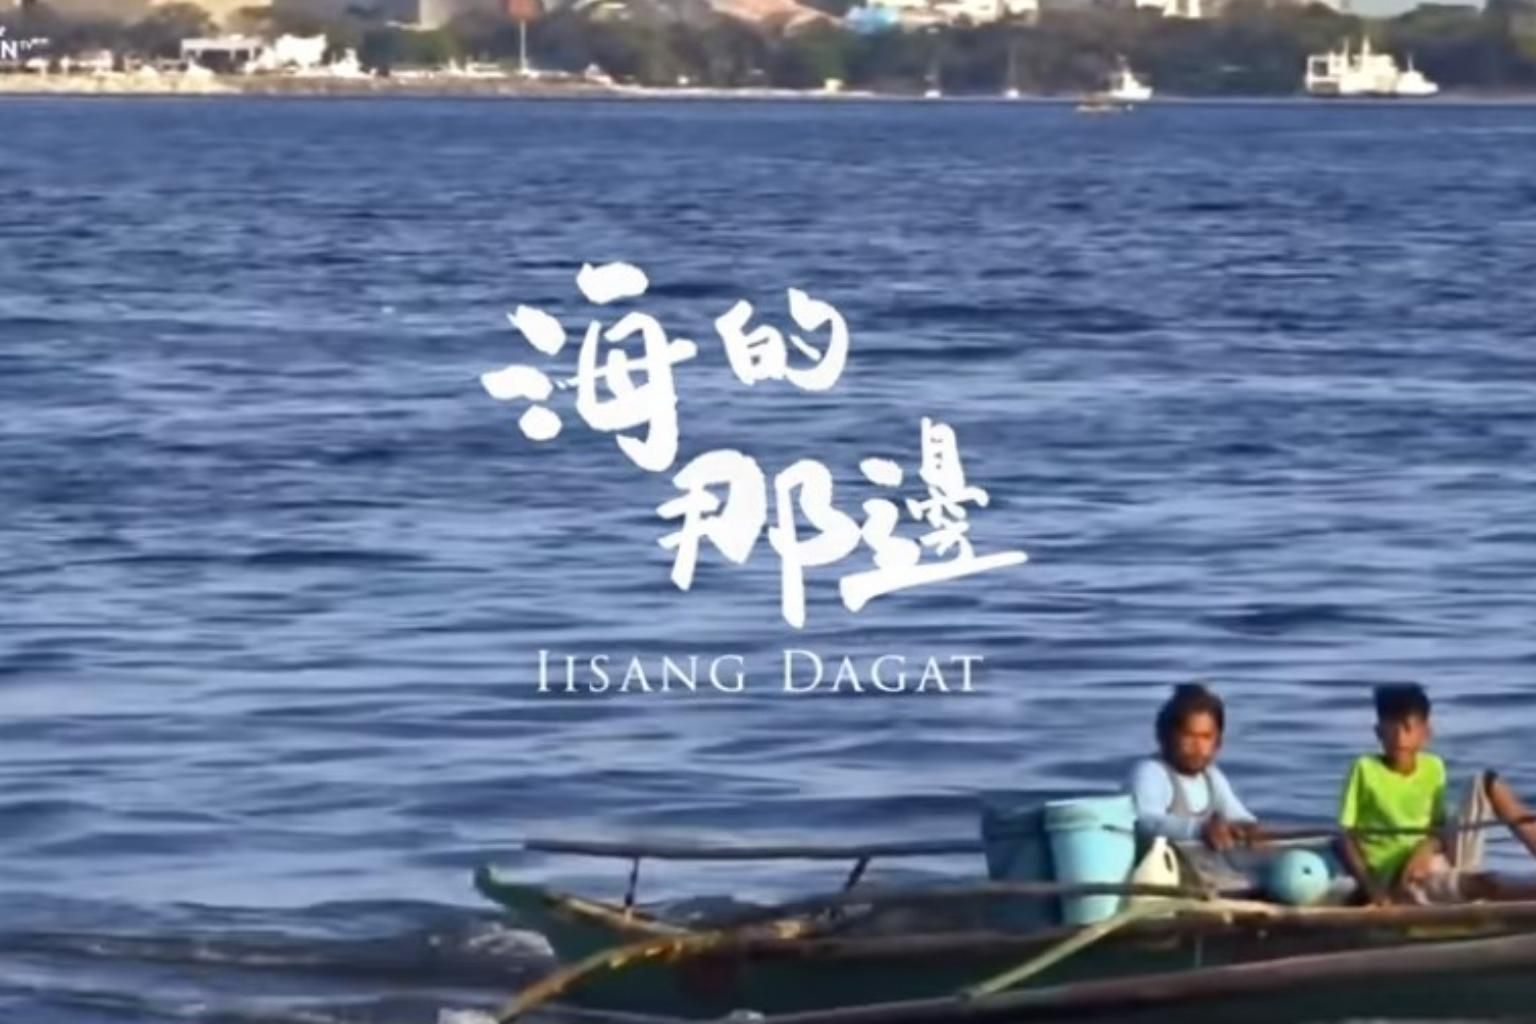 Bài hát “một biển” do Trung Quốc phát hành gây phẫn nộ tại Philippines (ảnh: SCMP)